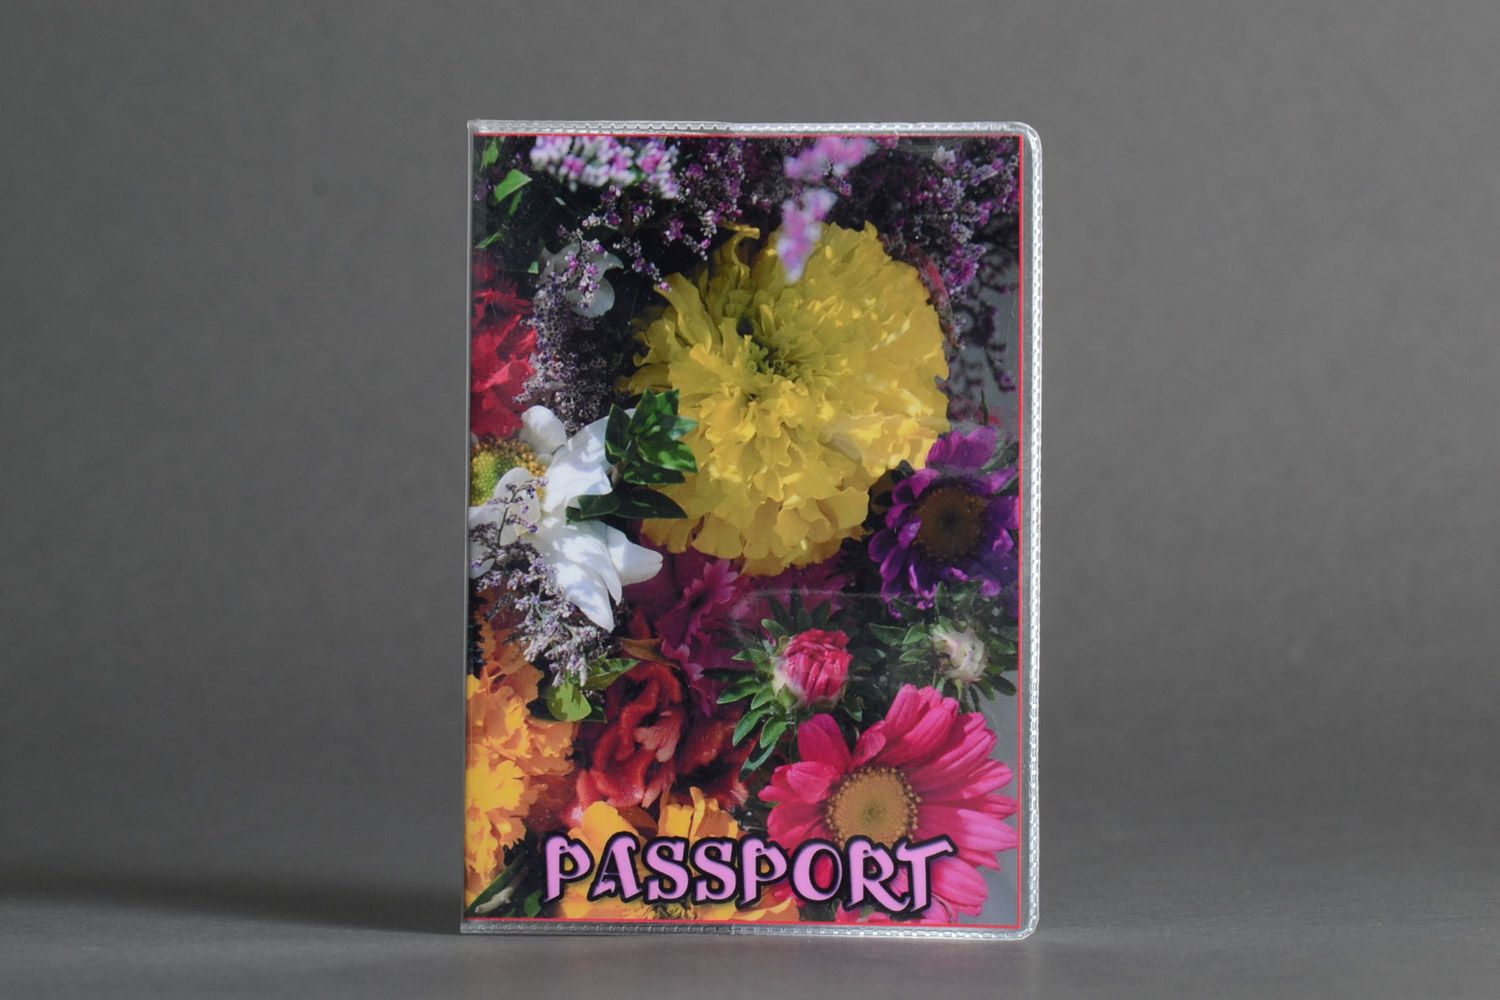 Пластиковая обложка для паспорта с цветочным фотопринтом ручной работы хэнд мэйд фото 1